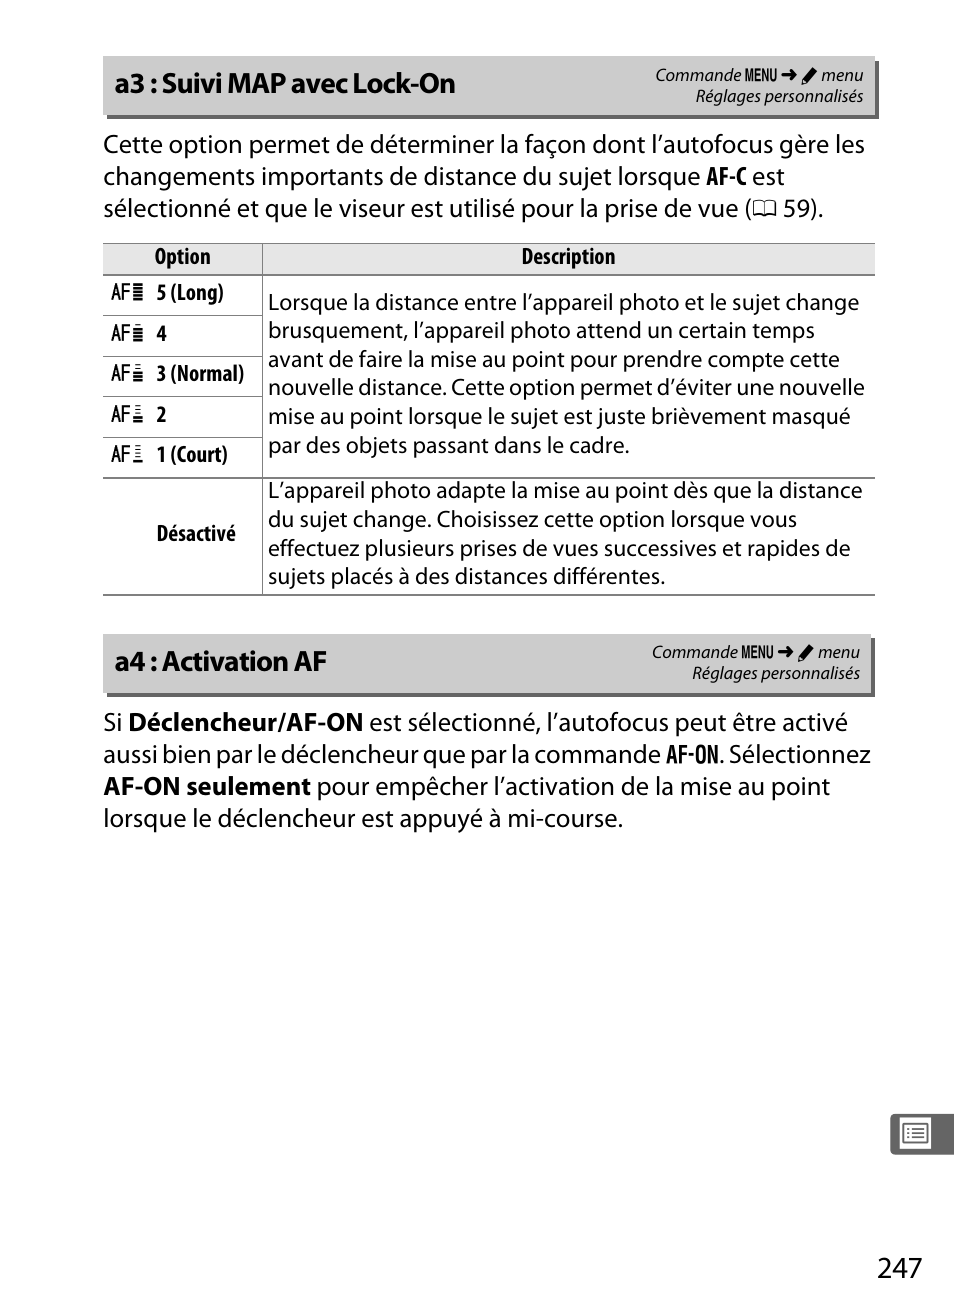 A3 : suivi map avec lock-on, A4 : activation af | Nikon Df Manuel d'utilisation | Page 267 / 396